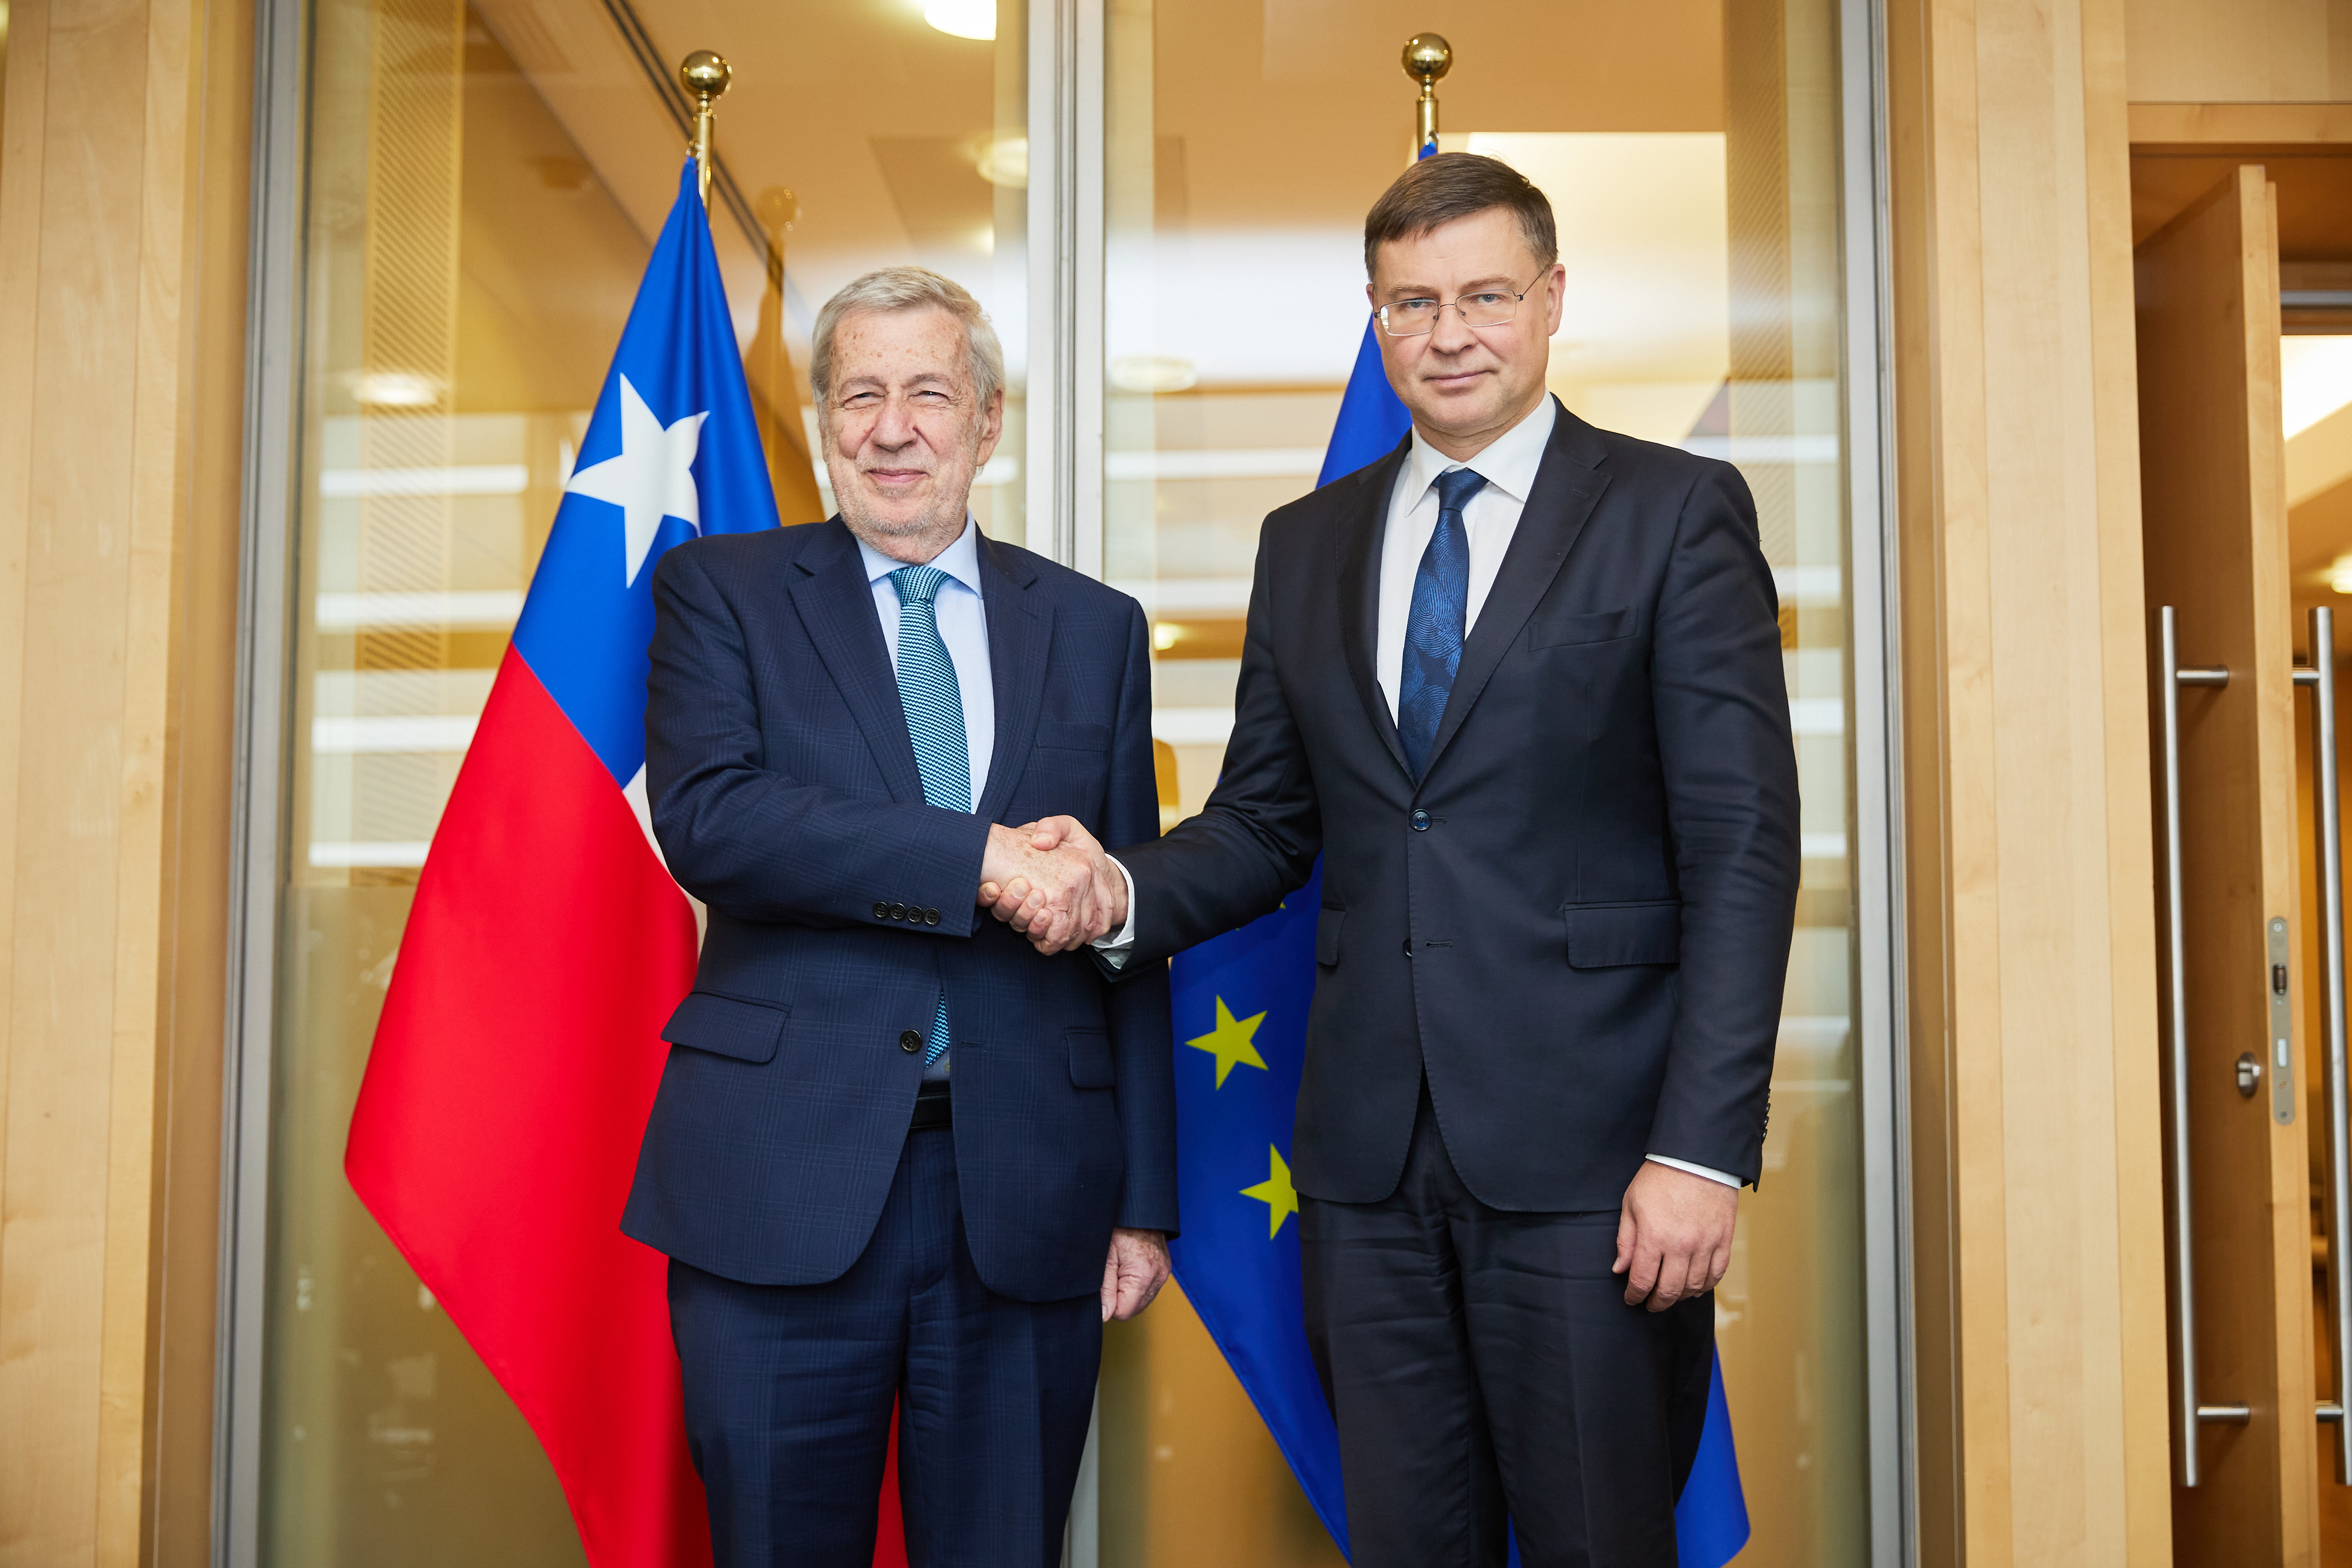 Chilen ulkoministeri Alberto van Klaveren ja komissaari Valdis Dombrovskis kättelevät lippujen edessä.